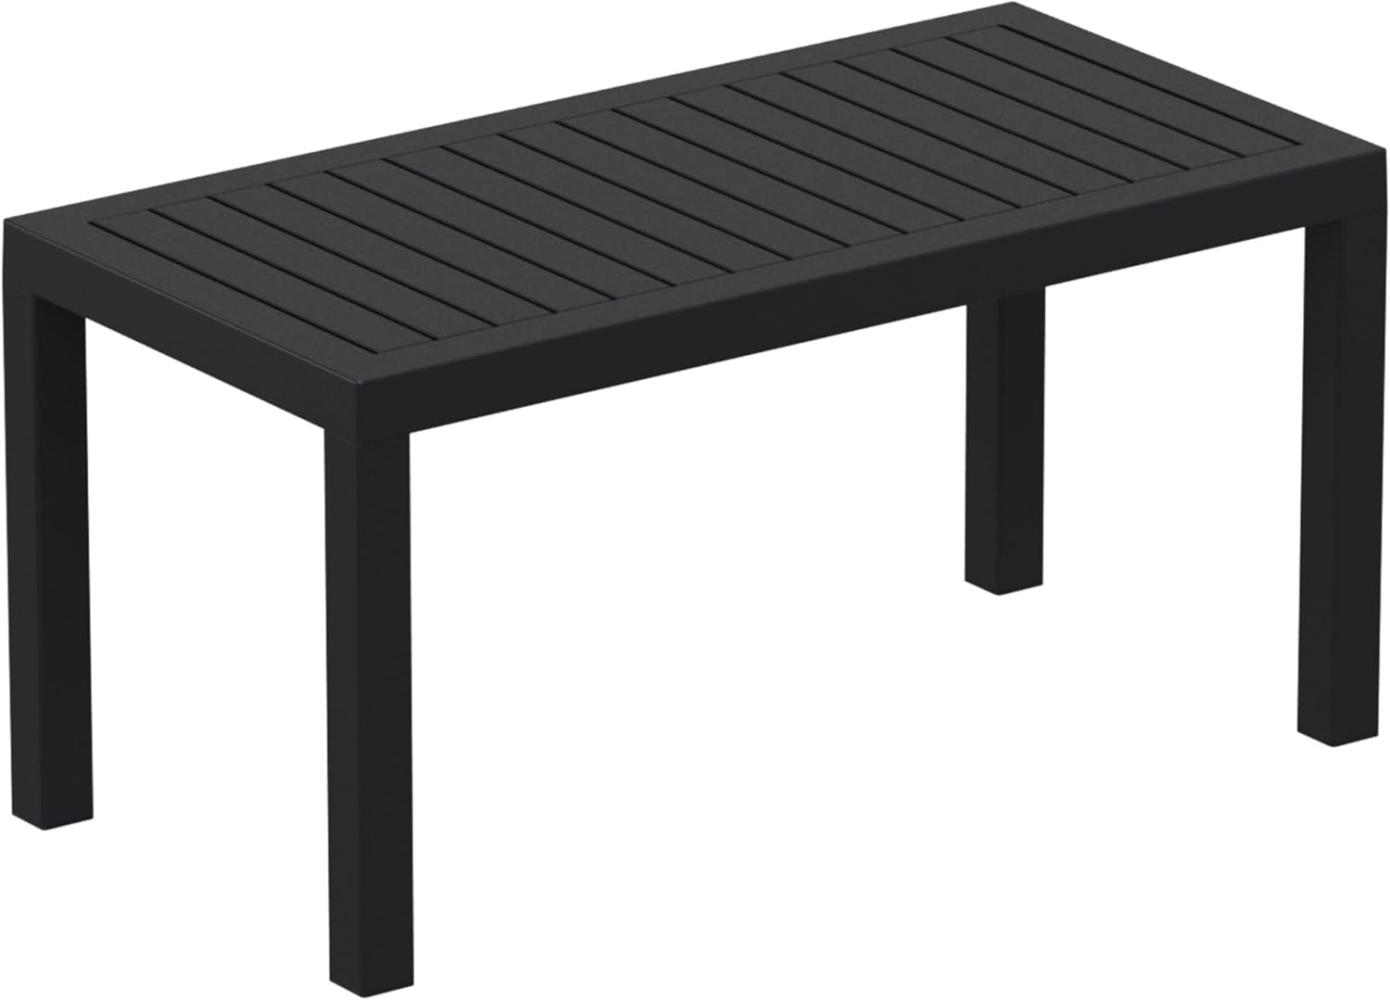 Lounge Tisch Ocean, schwarz Bild 1